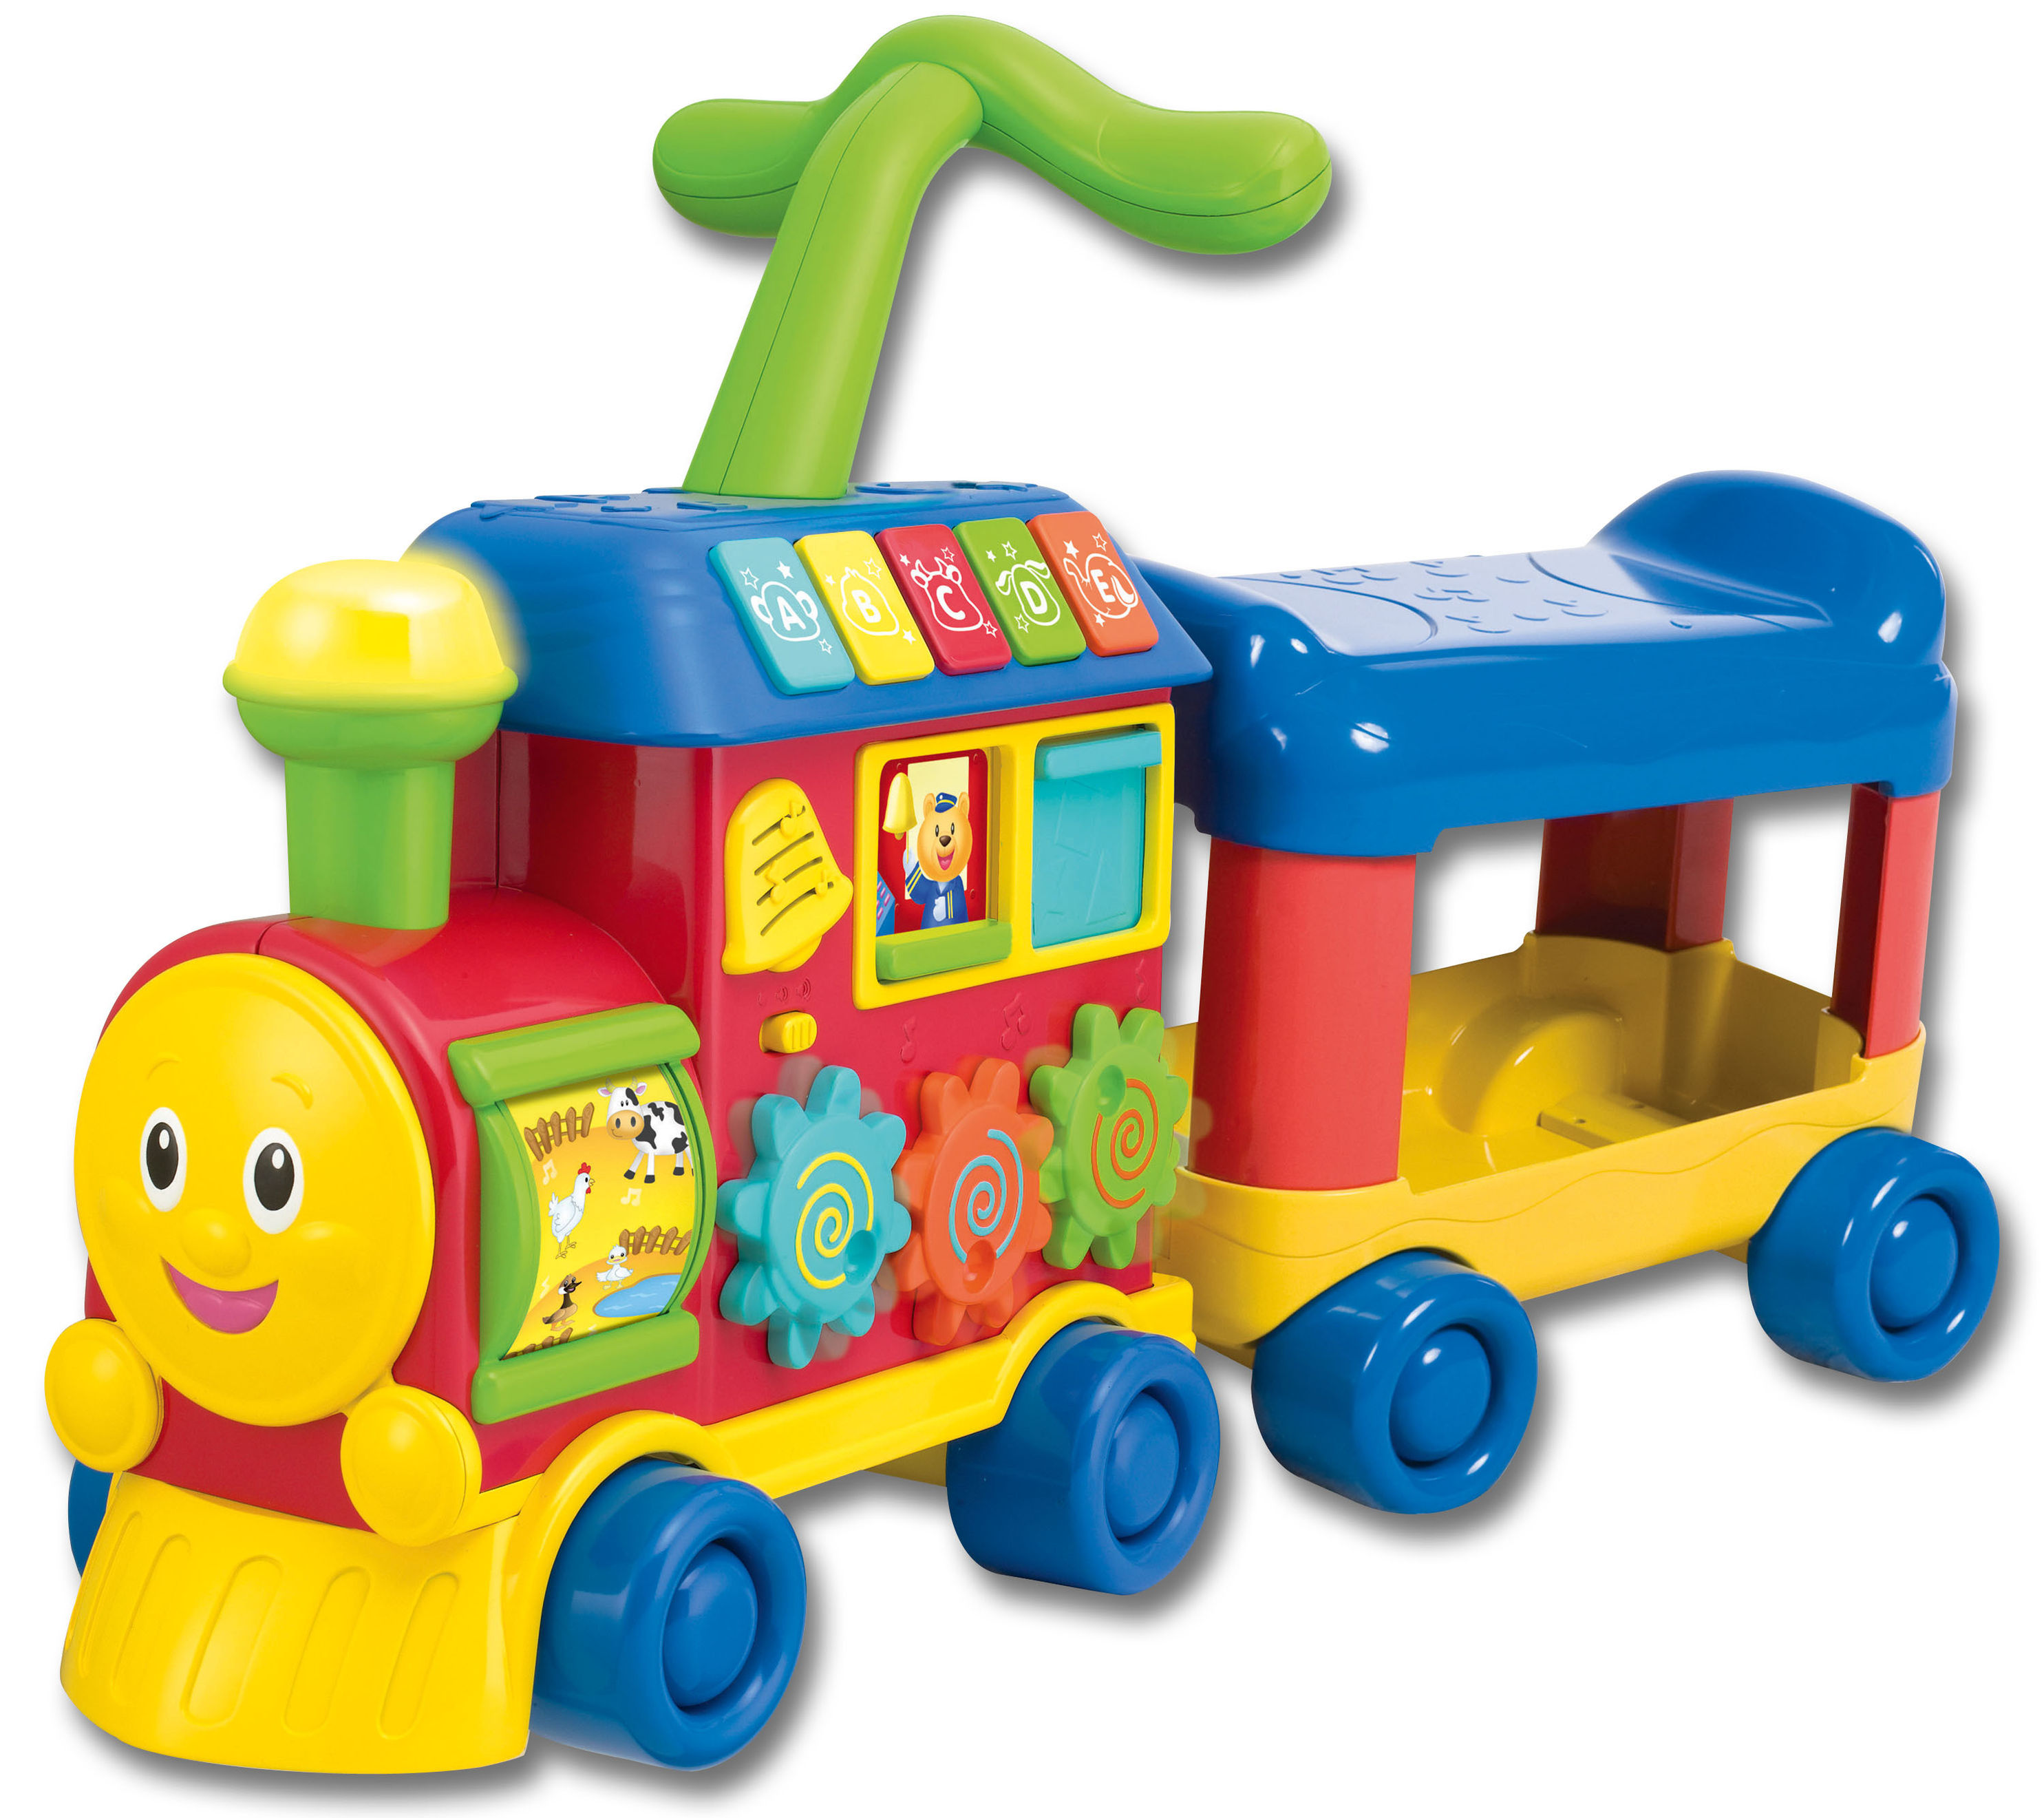 WinFun 3 in 1-Spiel-Express Eisenbahn, Babyspielzeug Farbe: bunt |  Weltbild.de